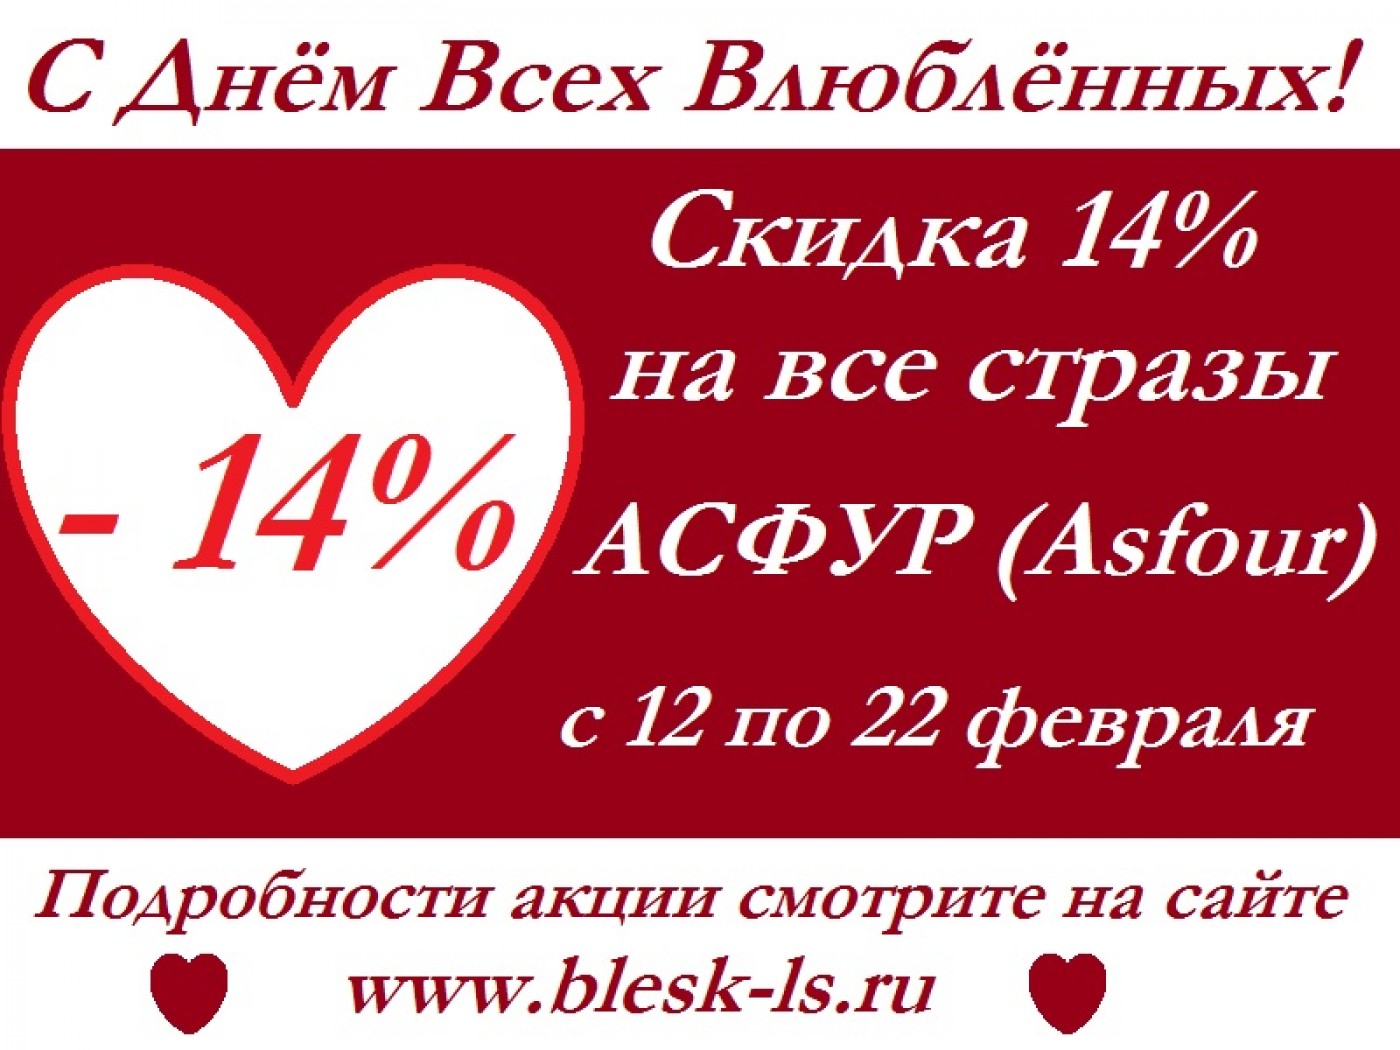 Скидка на стразы 14% ко Дню Всех Влюбленных в период с 12 по 22 февраля 2019 года!